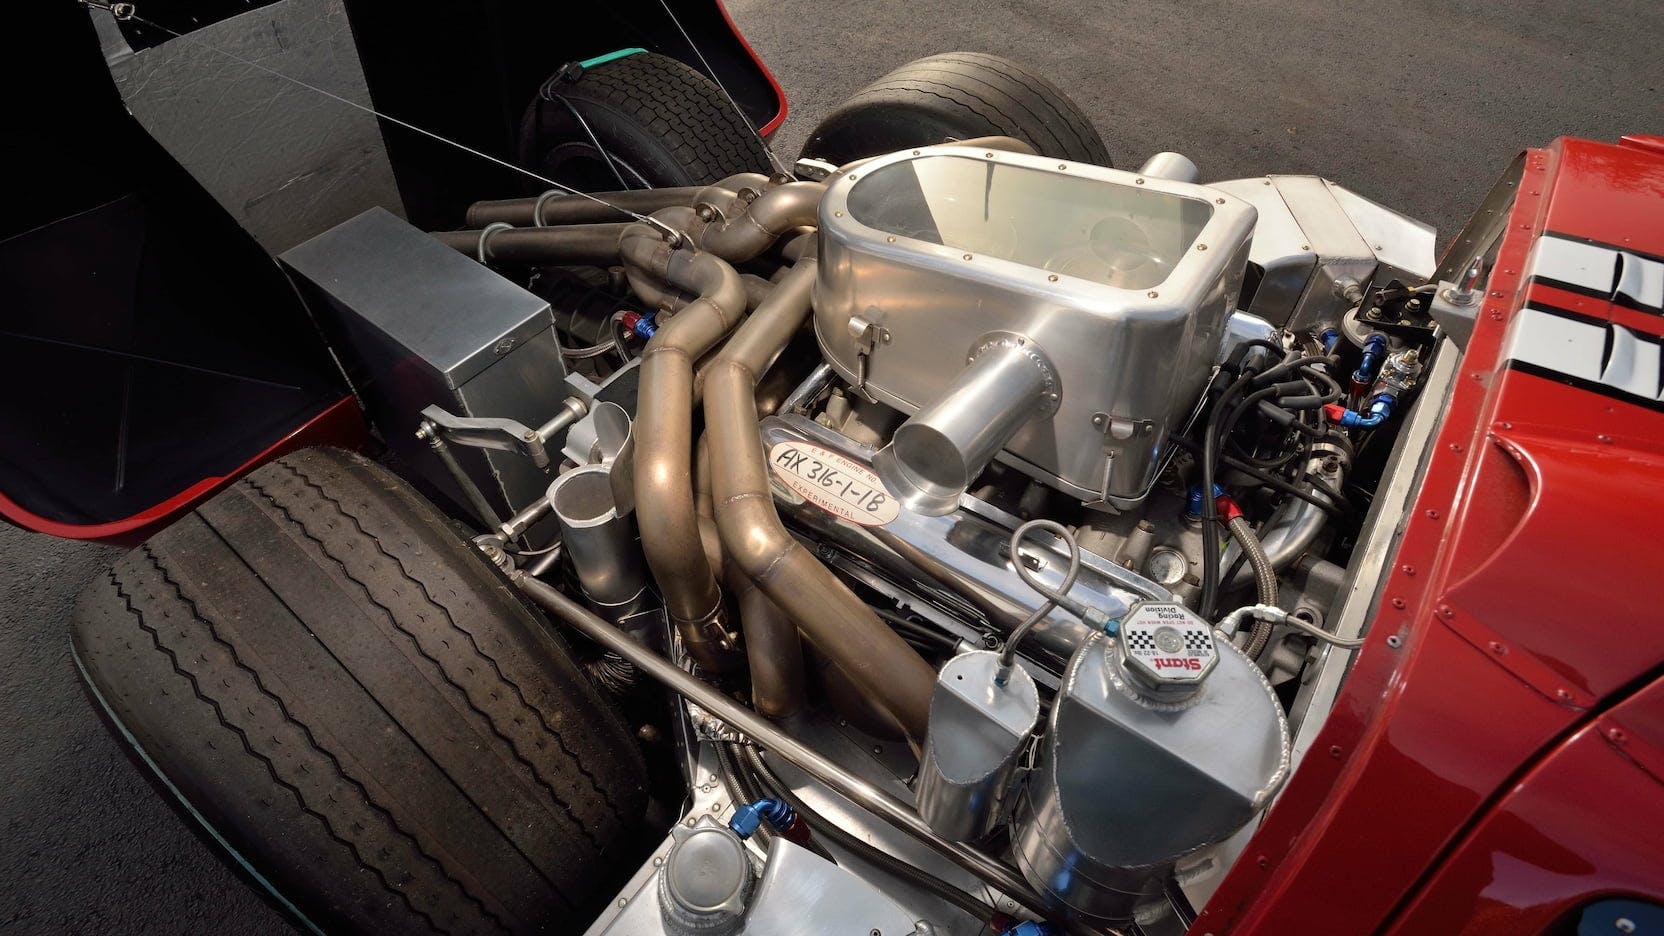 1967 Ford GT40 MK IV engine bay